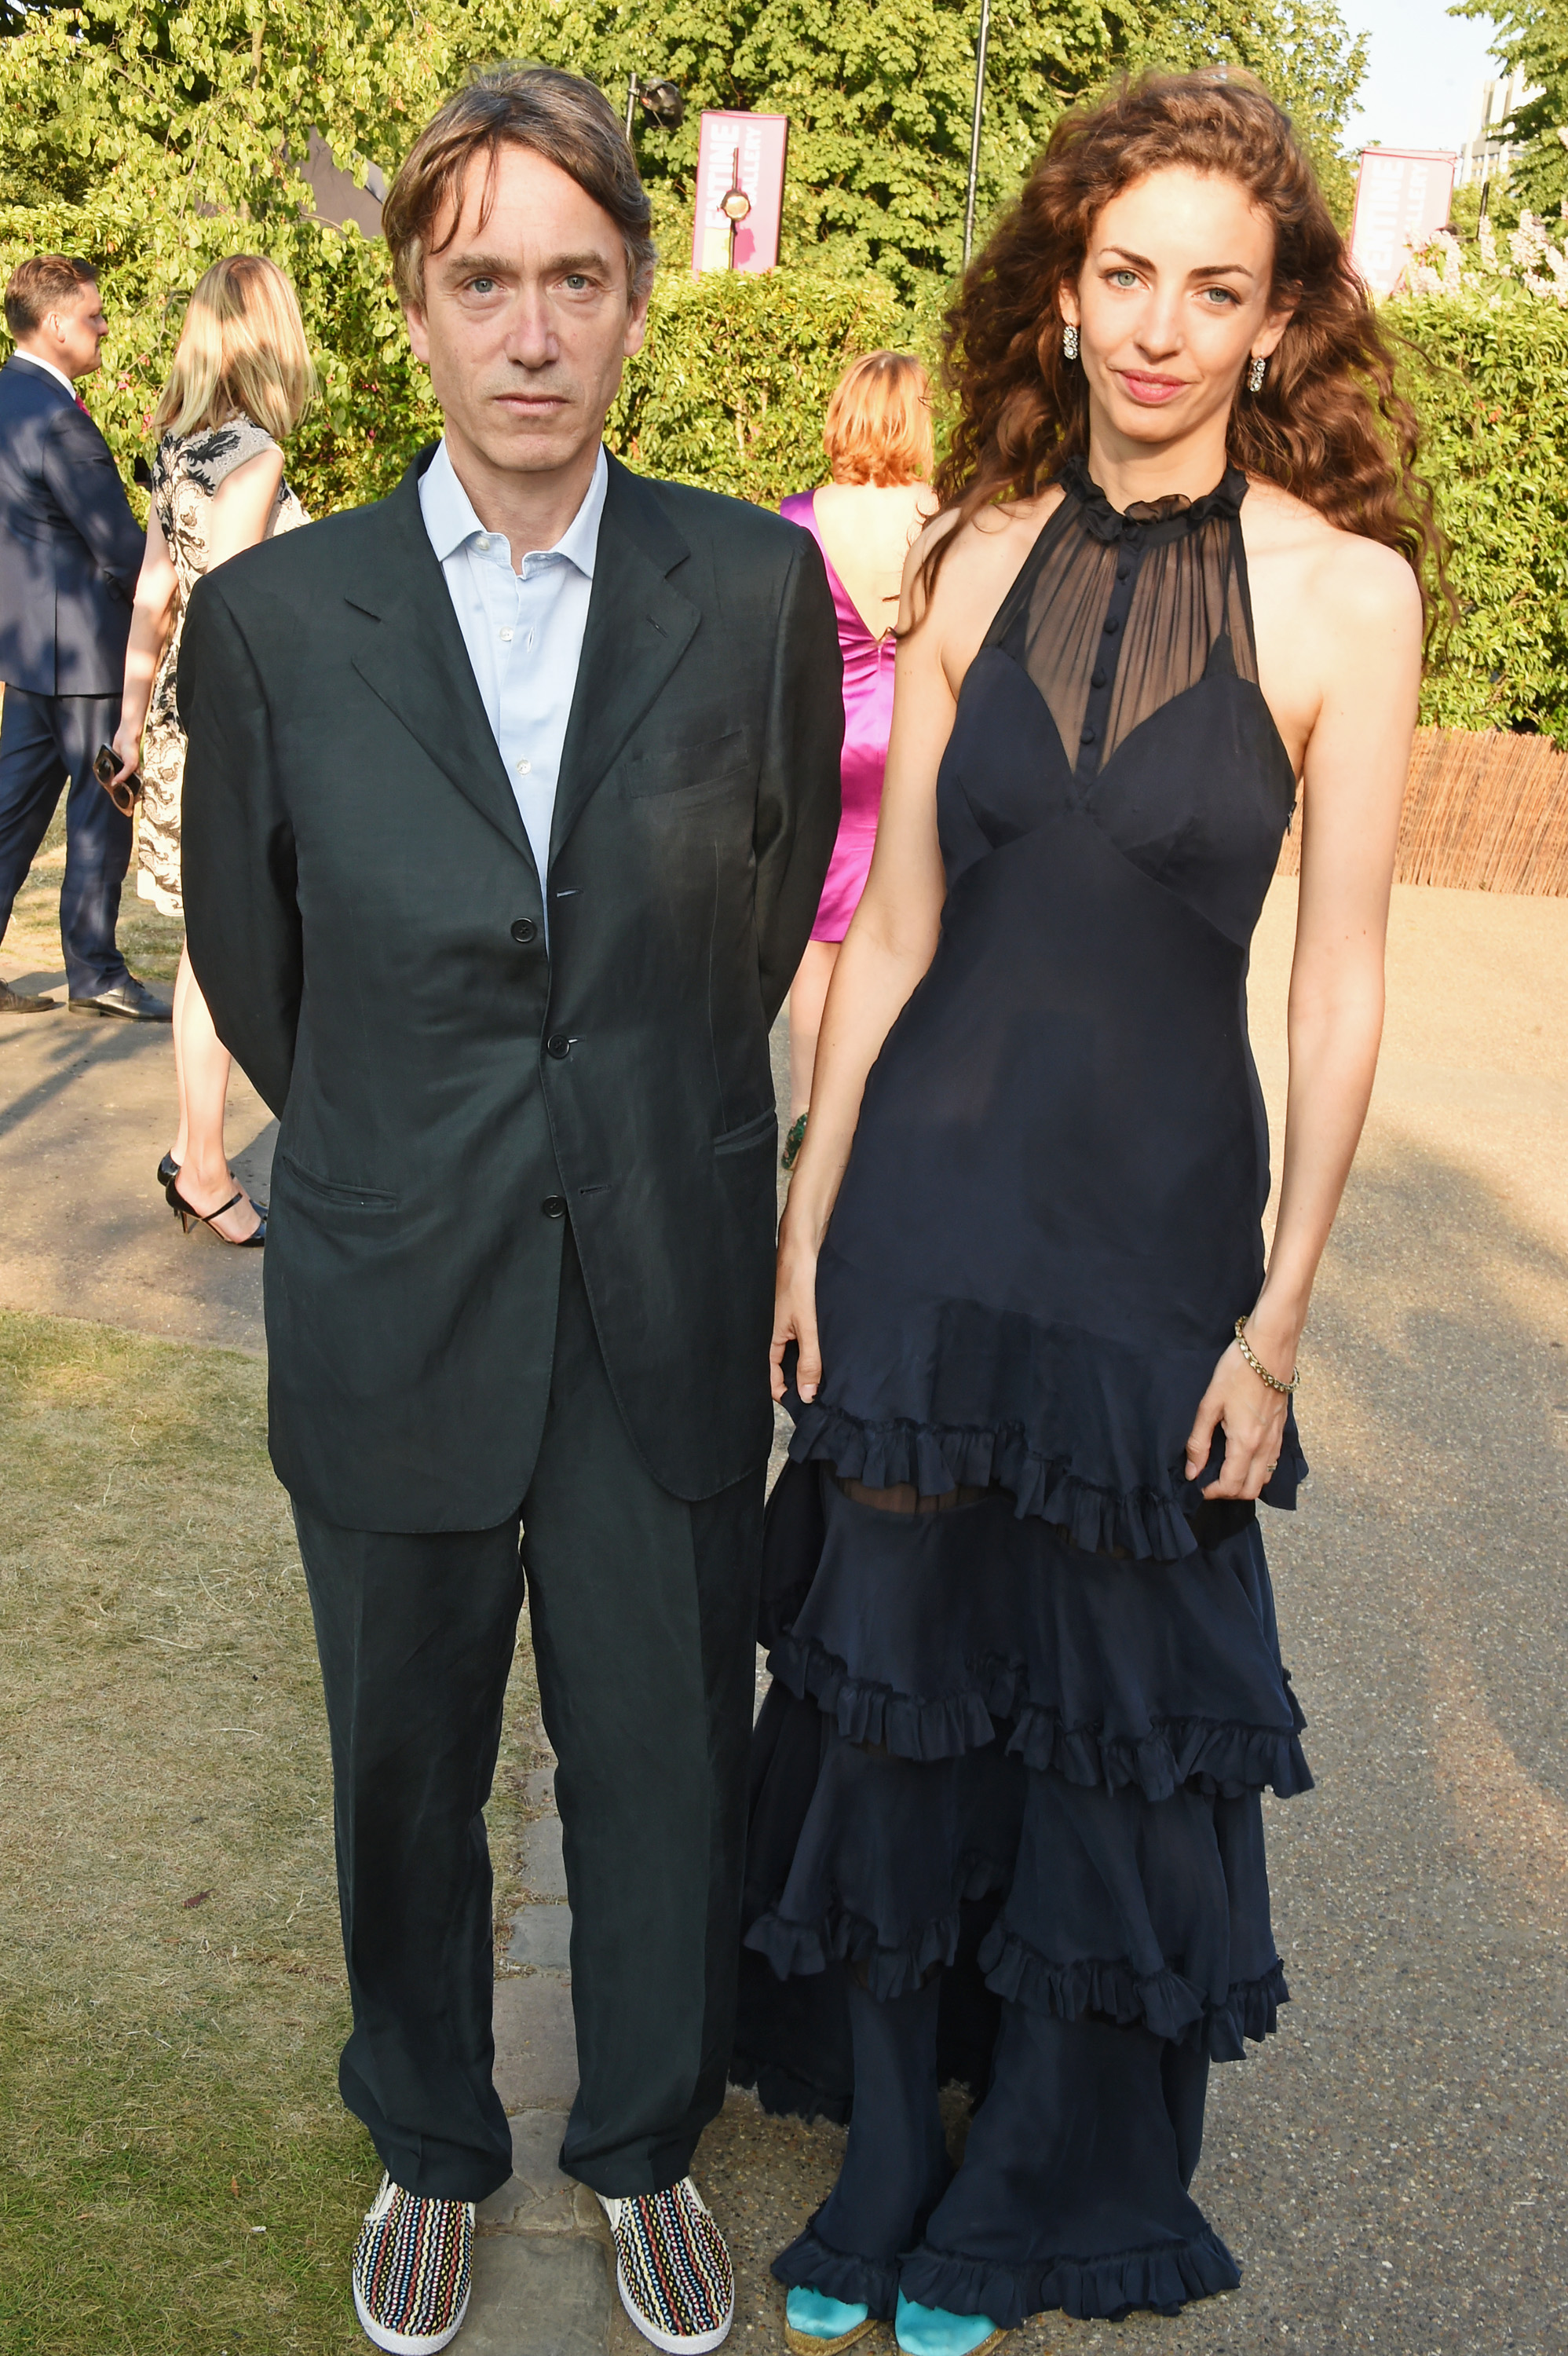 David Rocksavage, marqués de Cholmondeley y Rose Hanbury, marquesa de Cholmondeley en la fiesta de verano de The Serpentine Gallery en Londres, Inglaterra, el 2 de julio de 2015 | Foto: Getty Images